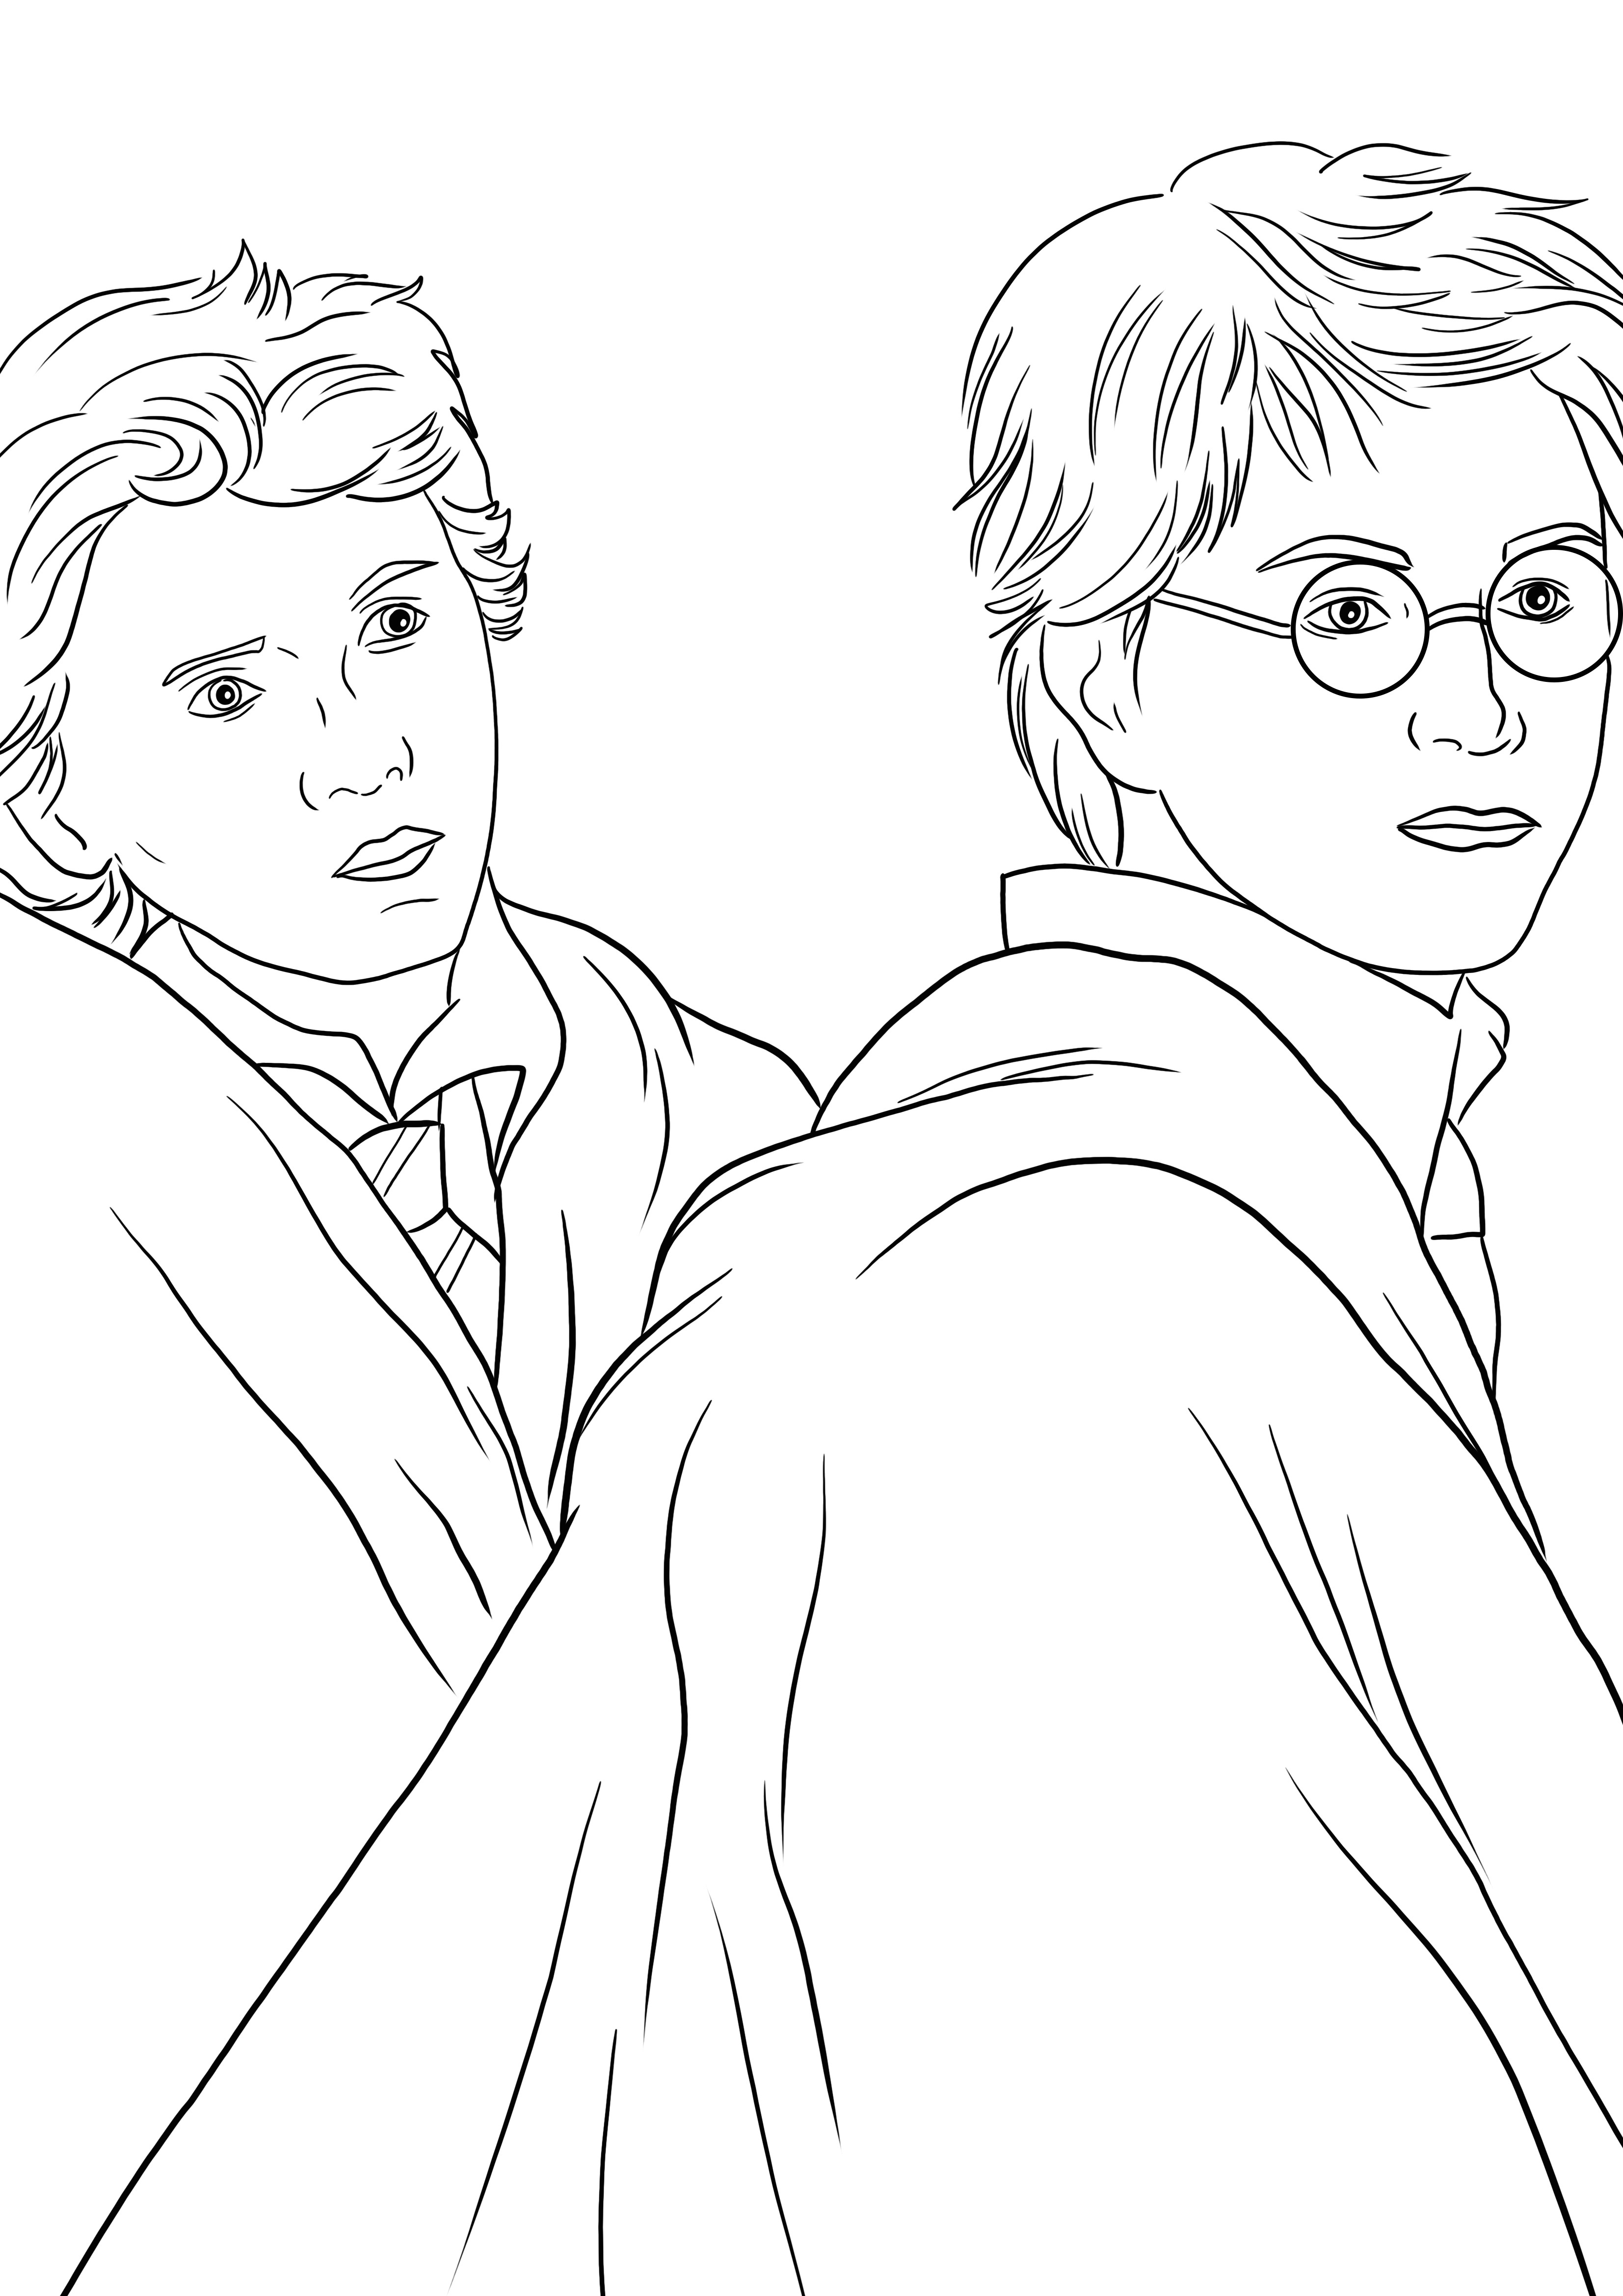 Harry és Weasley színező oldal nyomtatásához vagy letöltéséhez gyerekeknek színezni